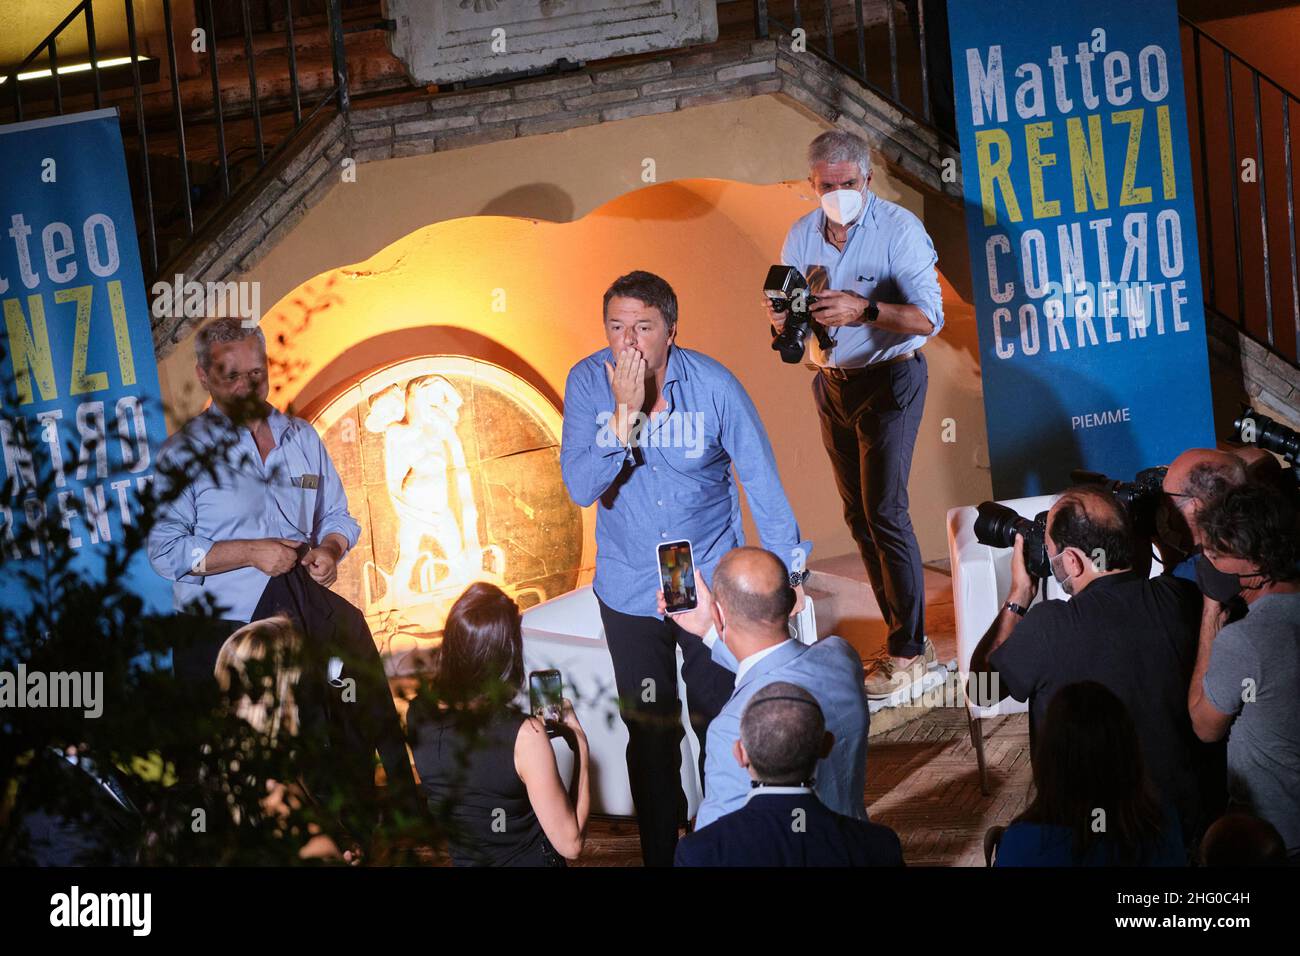 Mauro Scrobogna /LaPresse 20 de julio de 2021 Roma, Italia Política Italia Viva - presentación del libro Contro corriente de Matteo Renzi Foto de stock